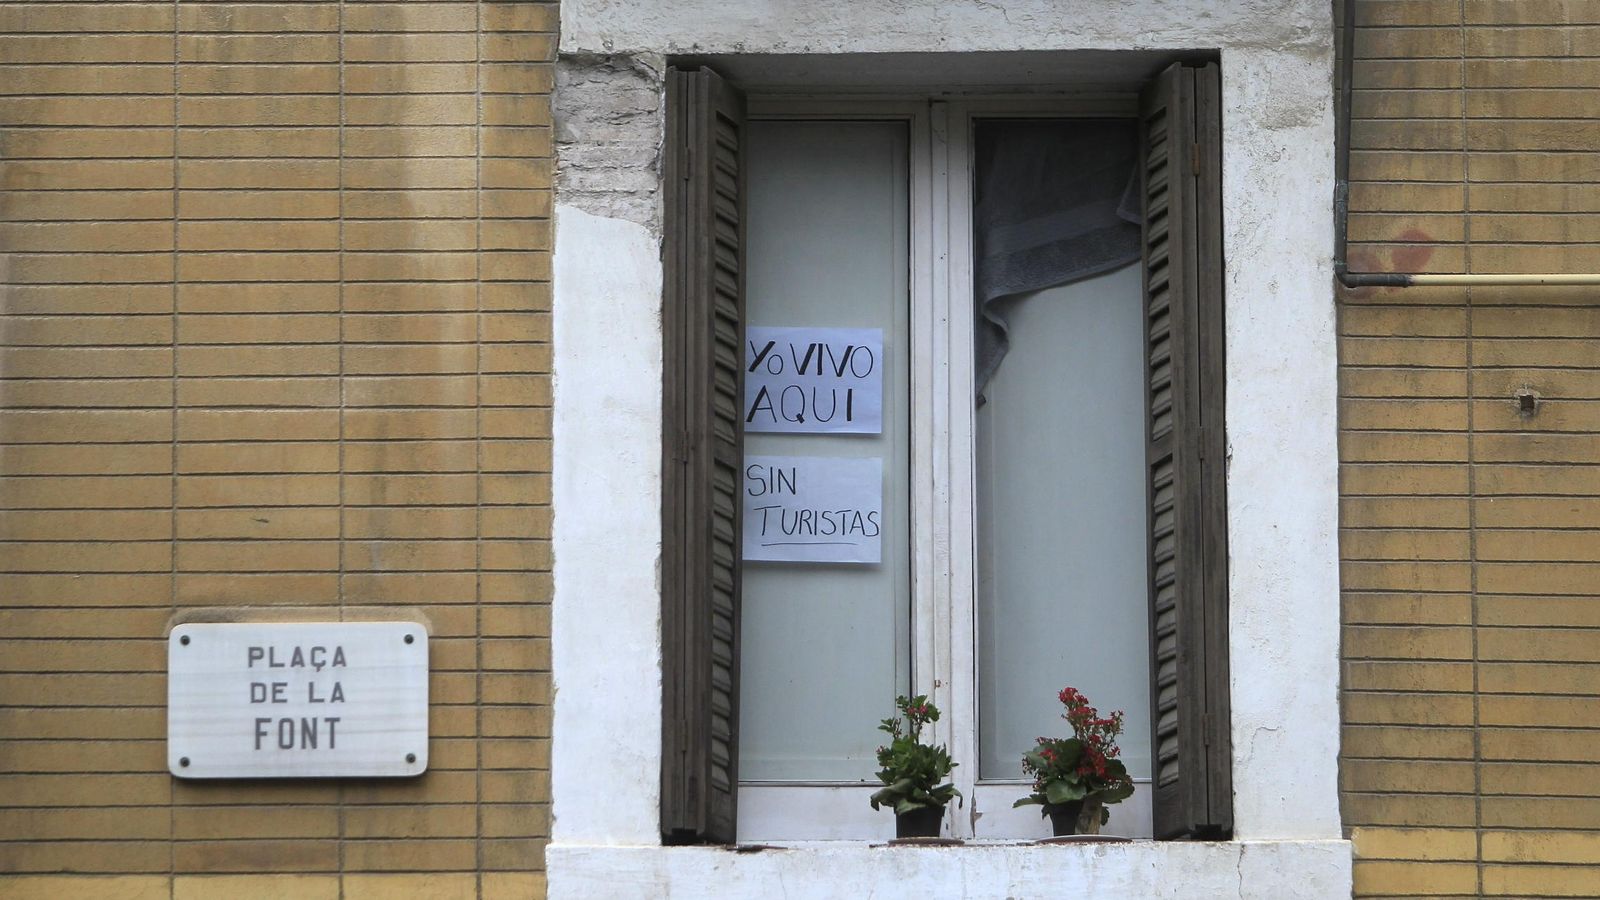 Foto: Un cartel en la ventana de un piso del barrio de La Barcelona avisa a los turistas de que se trata de una vivienda particular y no de un apartamento turístico. (EFE)